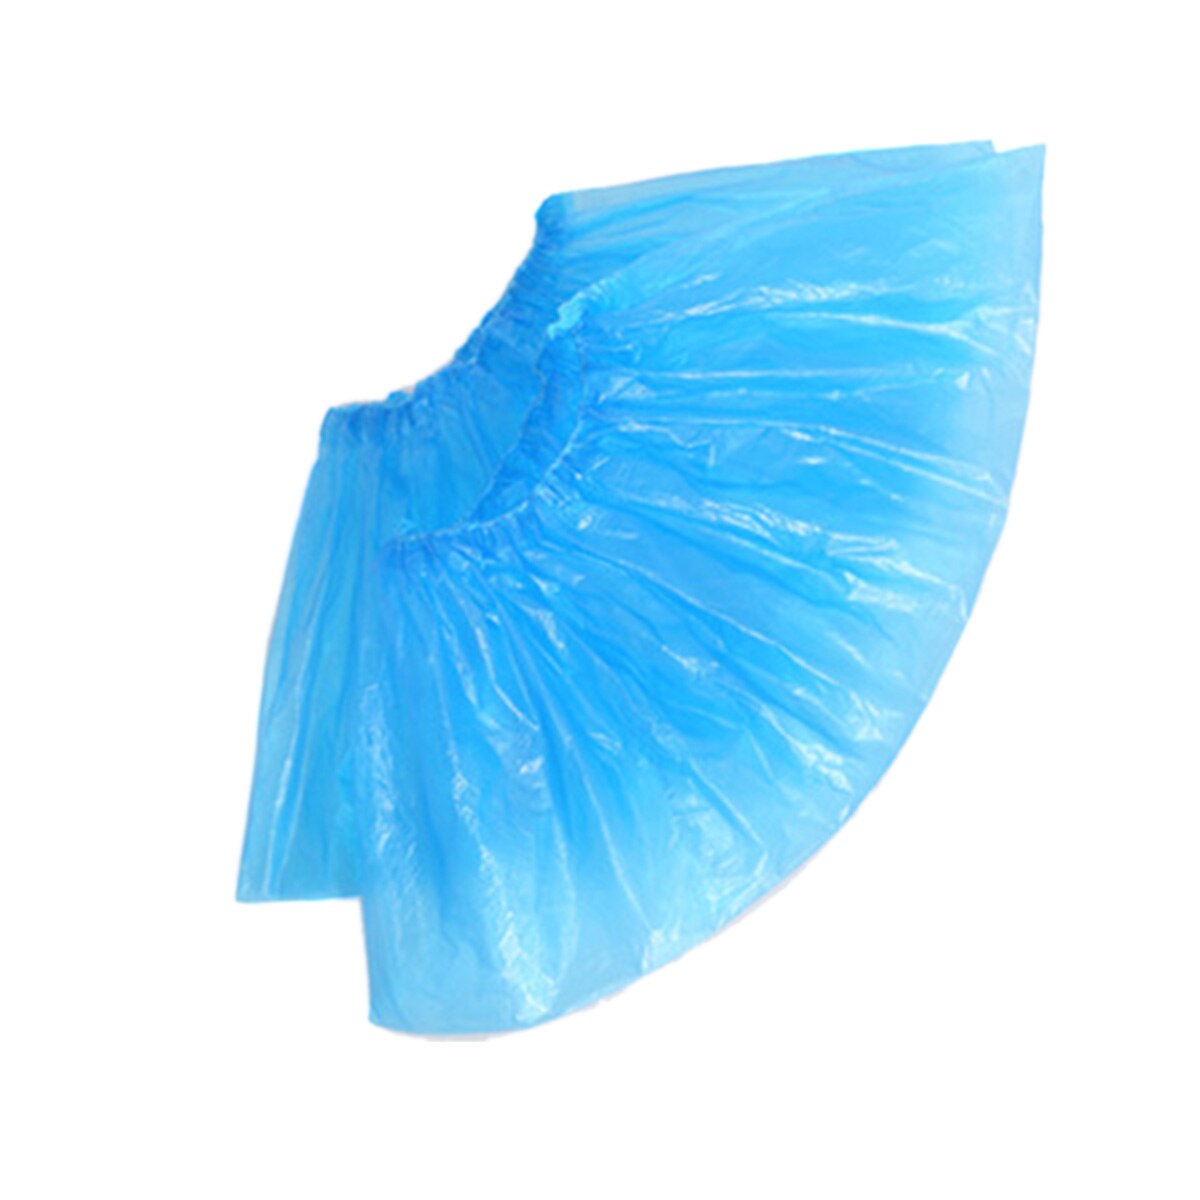 100 stk skoovertræk vandtætte engangssko boot cover plast oversko beskytter solid klar elastik: Blå